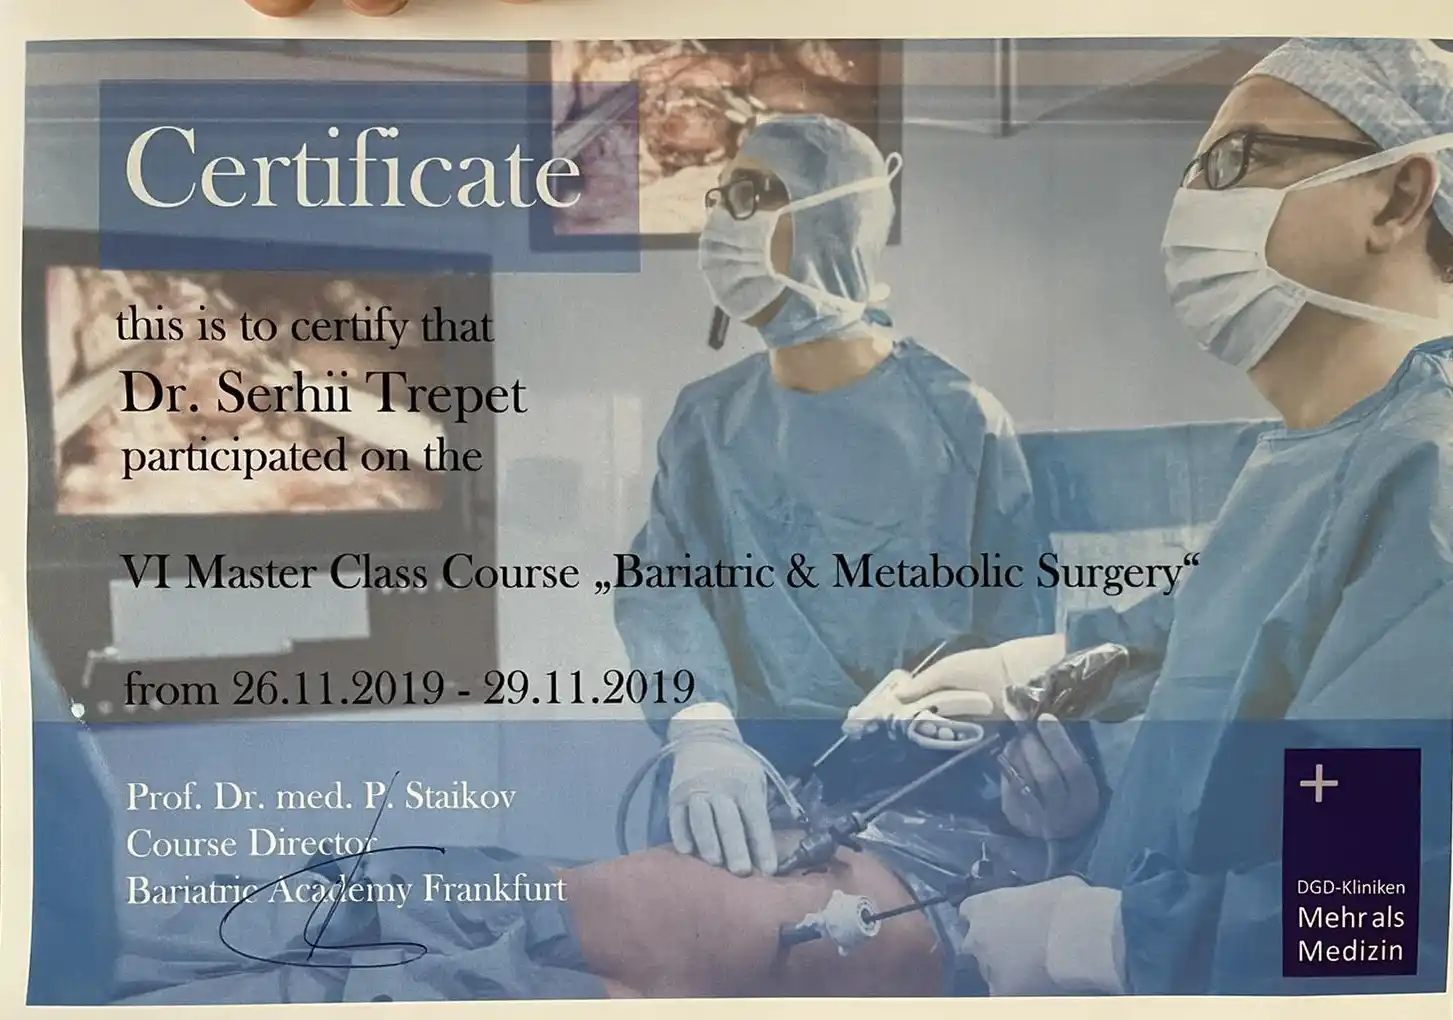 Сертификат «Бариатрическая и метаболическая хирургия» у профессора П. Стайкова в «Бариатрической Академии Франкфурта».